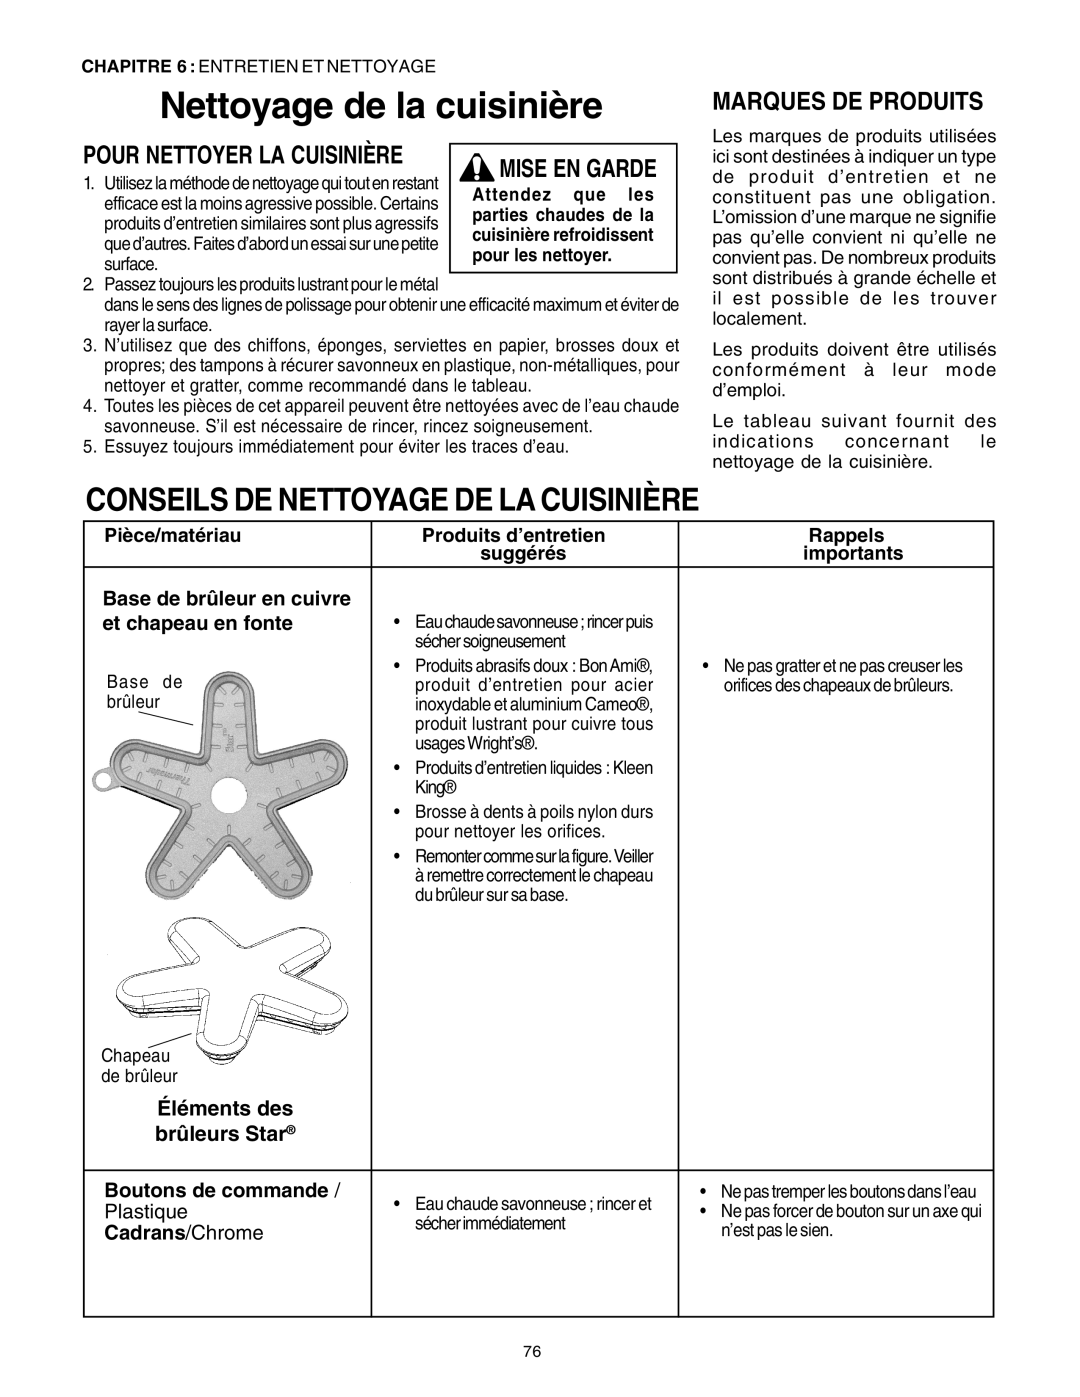 Thermador PG30 Nettoyage de la cuisinière, Conseils De Nettoyage De La Cuisinière, Marques De Produits, Mise En Garde 